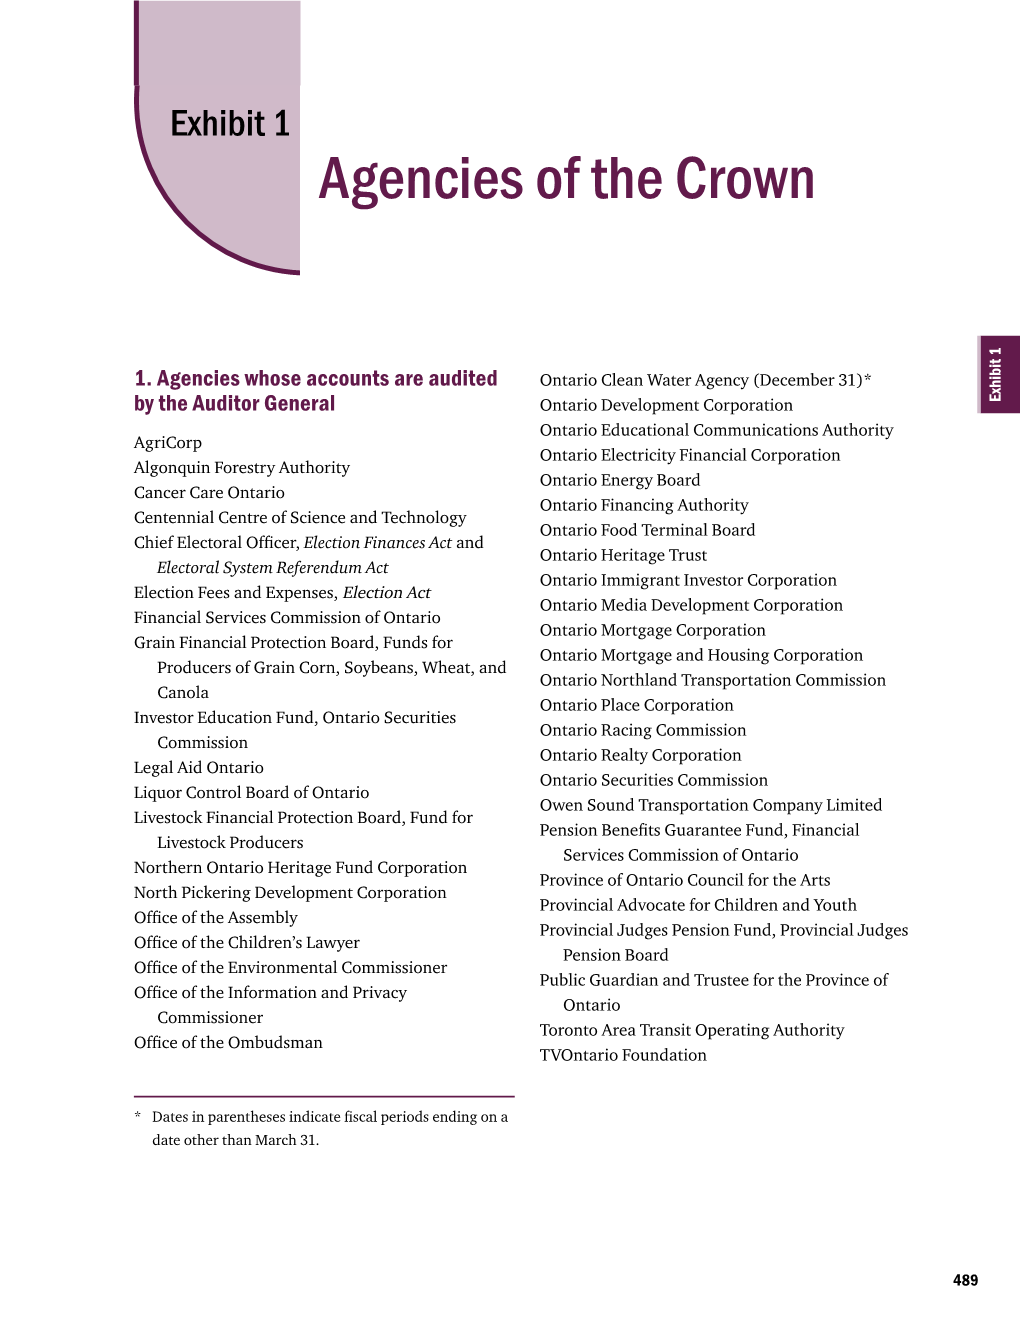 Exhibit 1: Agencies of the Crown (Pdf 114Kb)